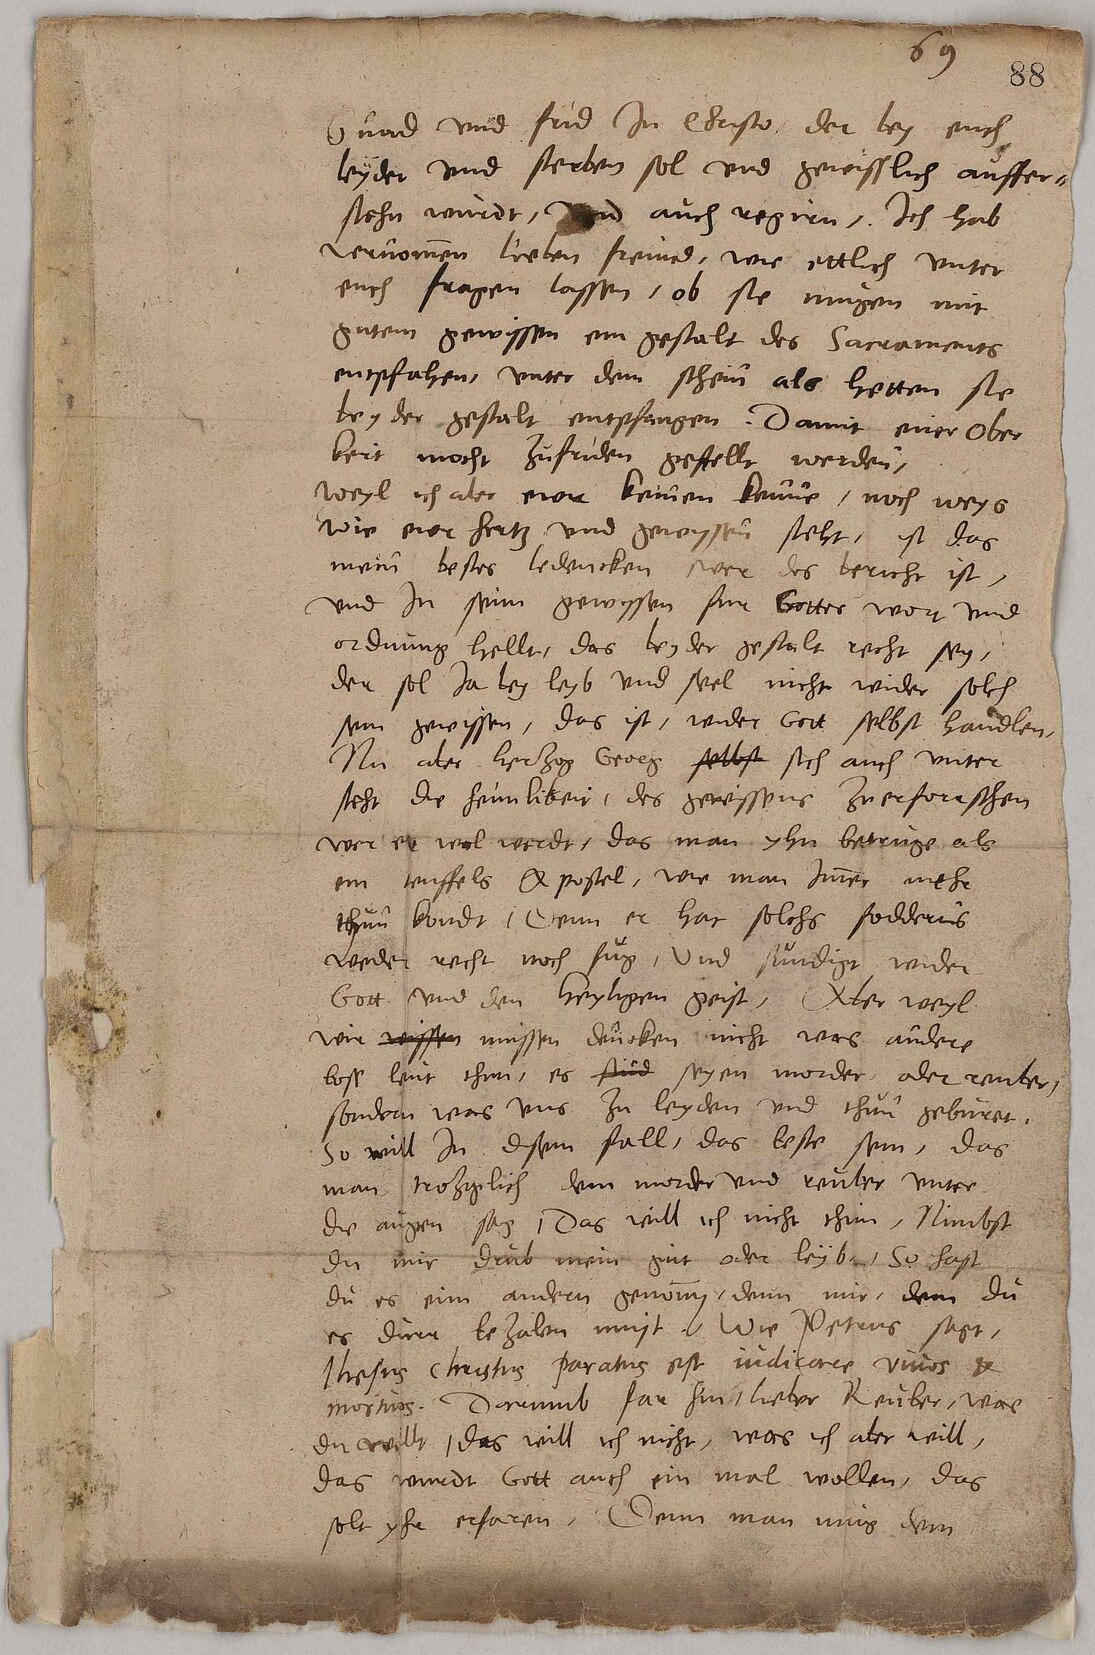 Eigenhändiger Brief Martin Luthers vom 11. April 1533 an die Evangelischen in Leipzig